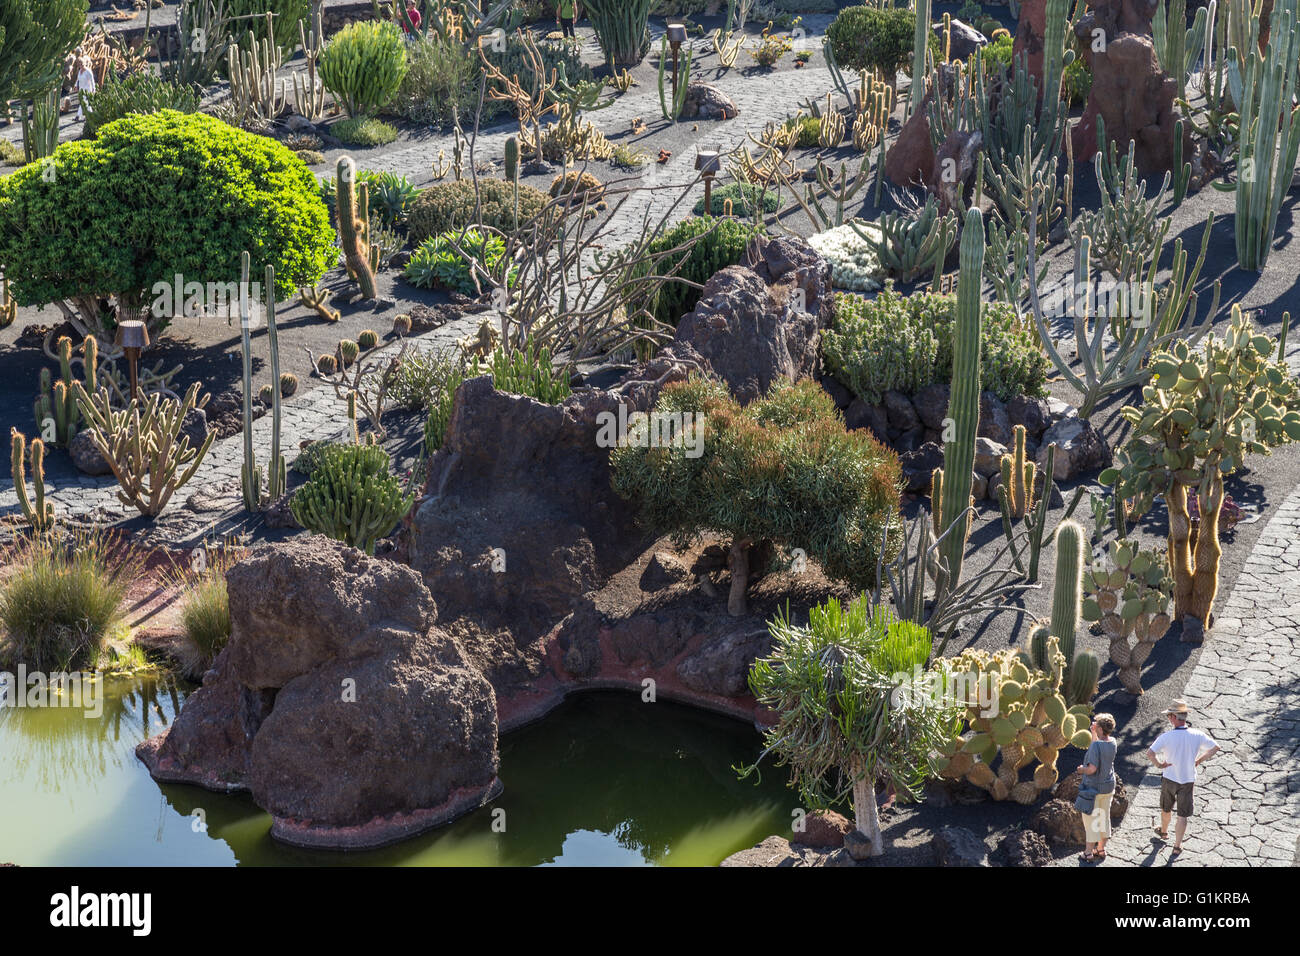 Lanzarote Cactus Garden. Designed by César Manrique. Stock Photo